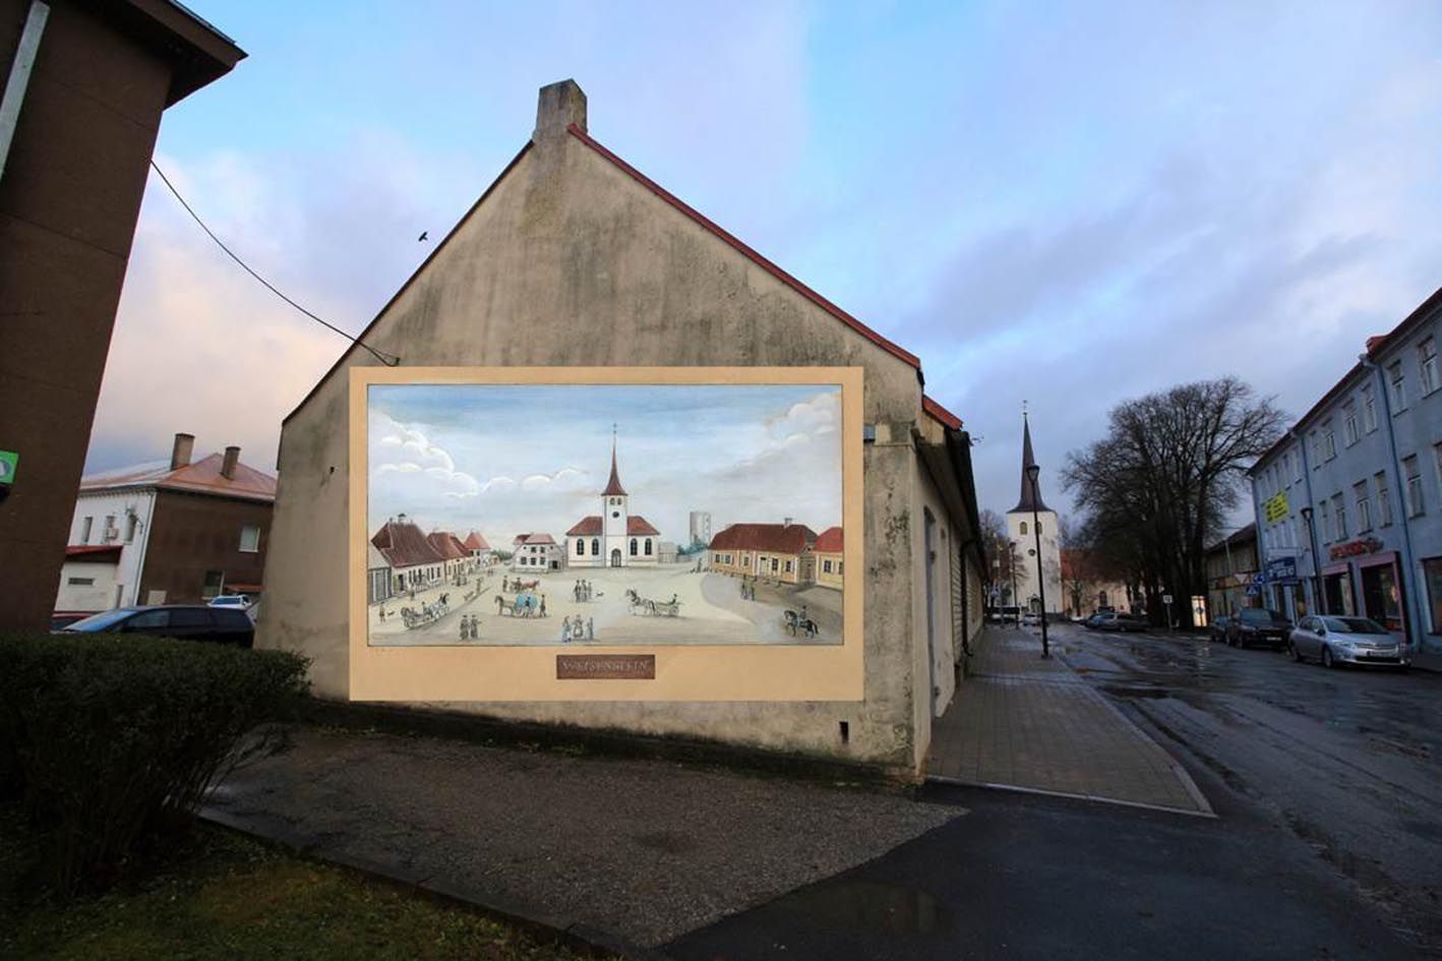 Paides Pikal tänaval asuva vana kalapoe seina võib juba paari kuu pärast kaunistada F. Wilbergi keskväljakust tehtud maali koopia, aga Türi kultuurikeskuse kõrval asuval vana veetornil võib näha muinasjututegelast Rapuntslit.